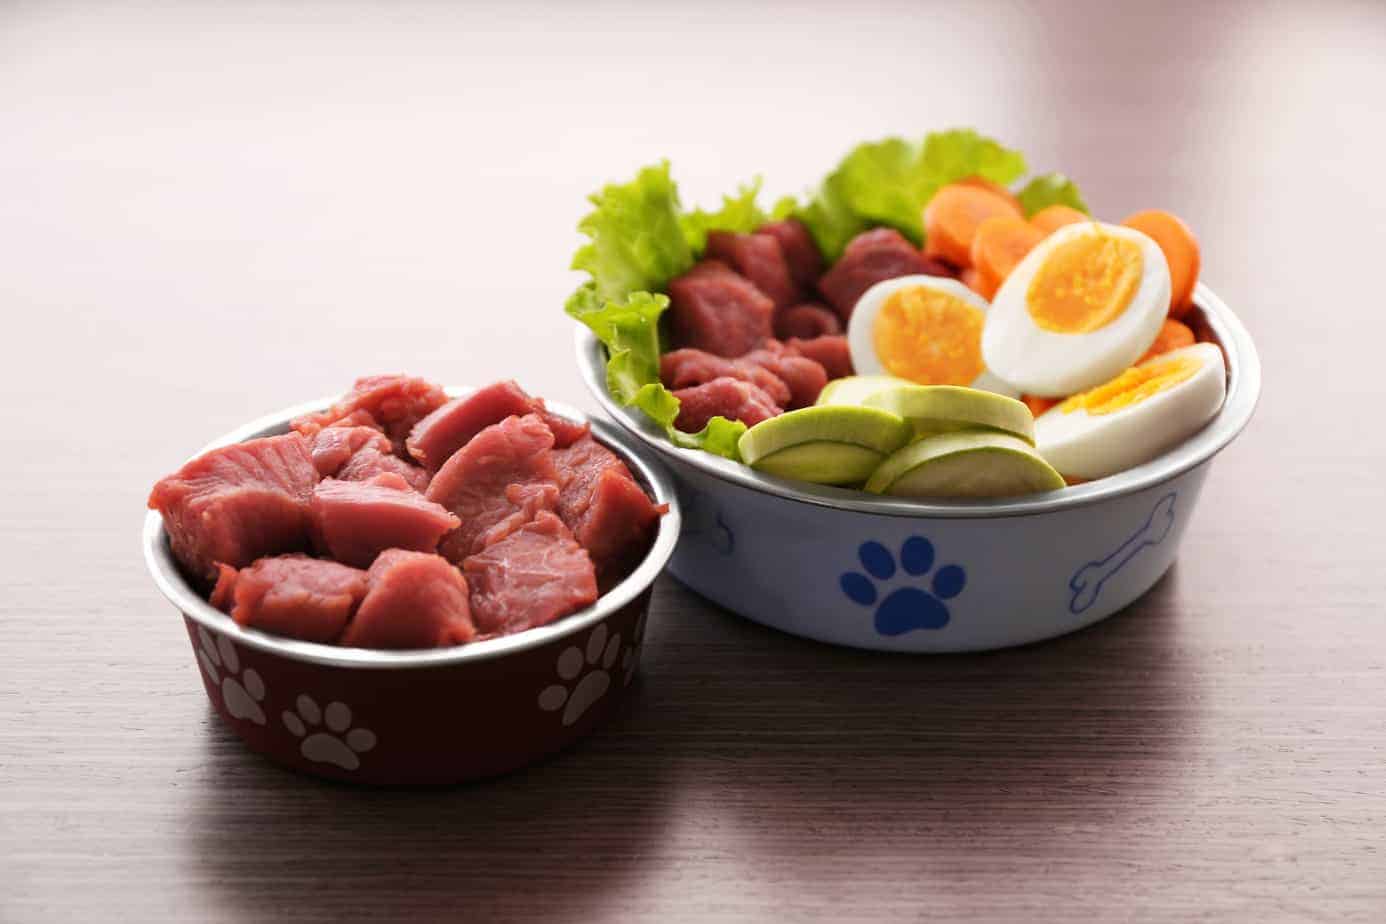 Healthy dog food